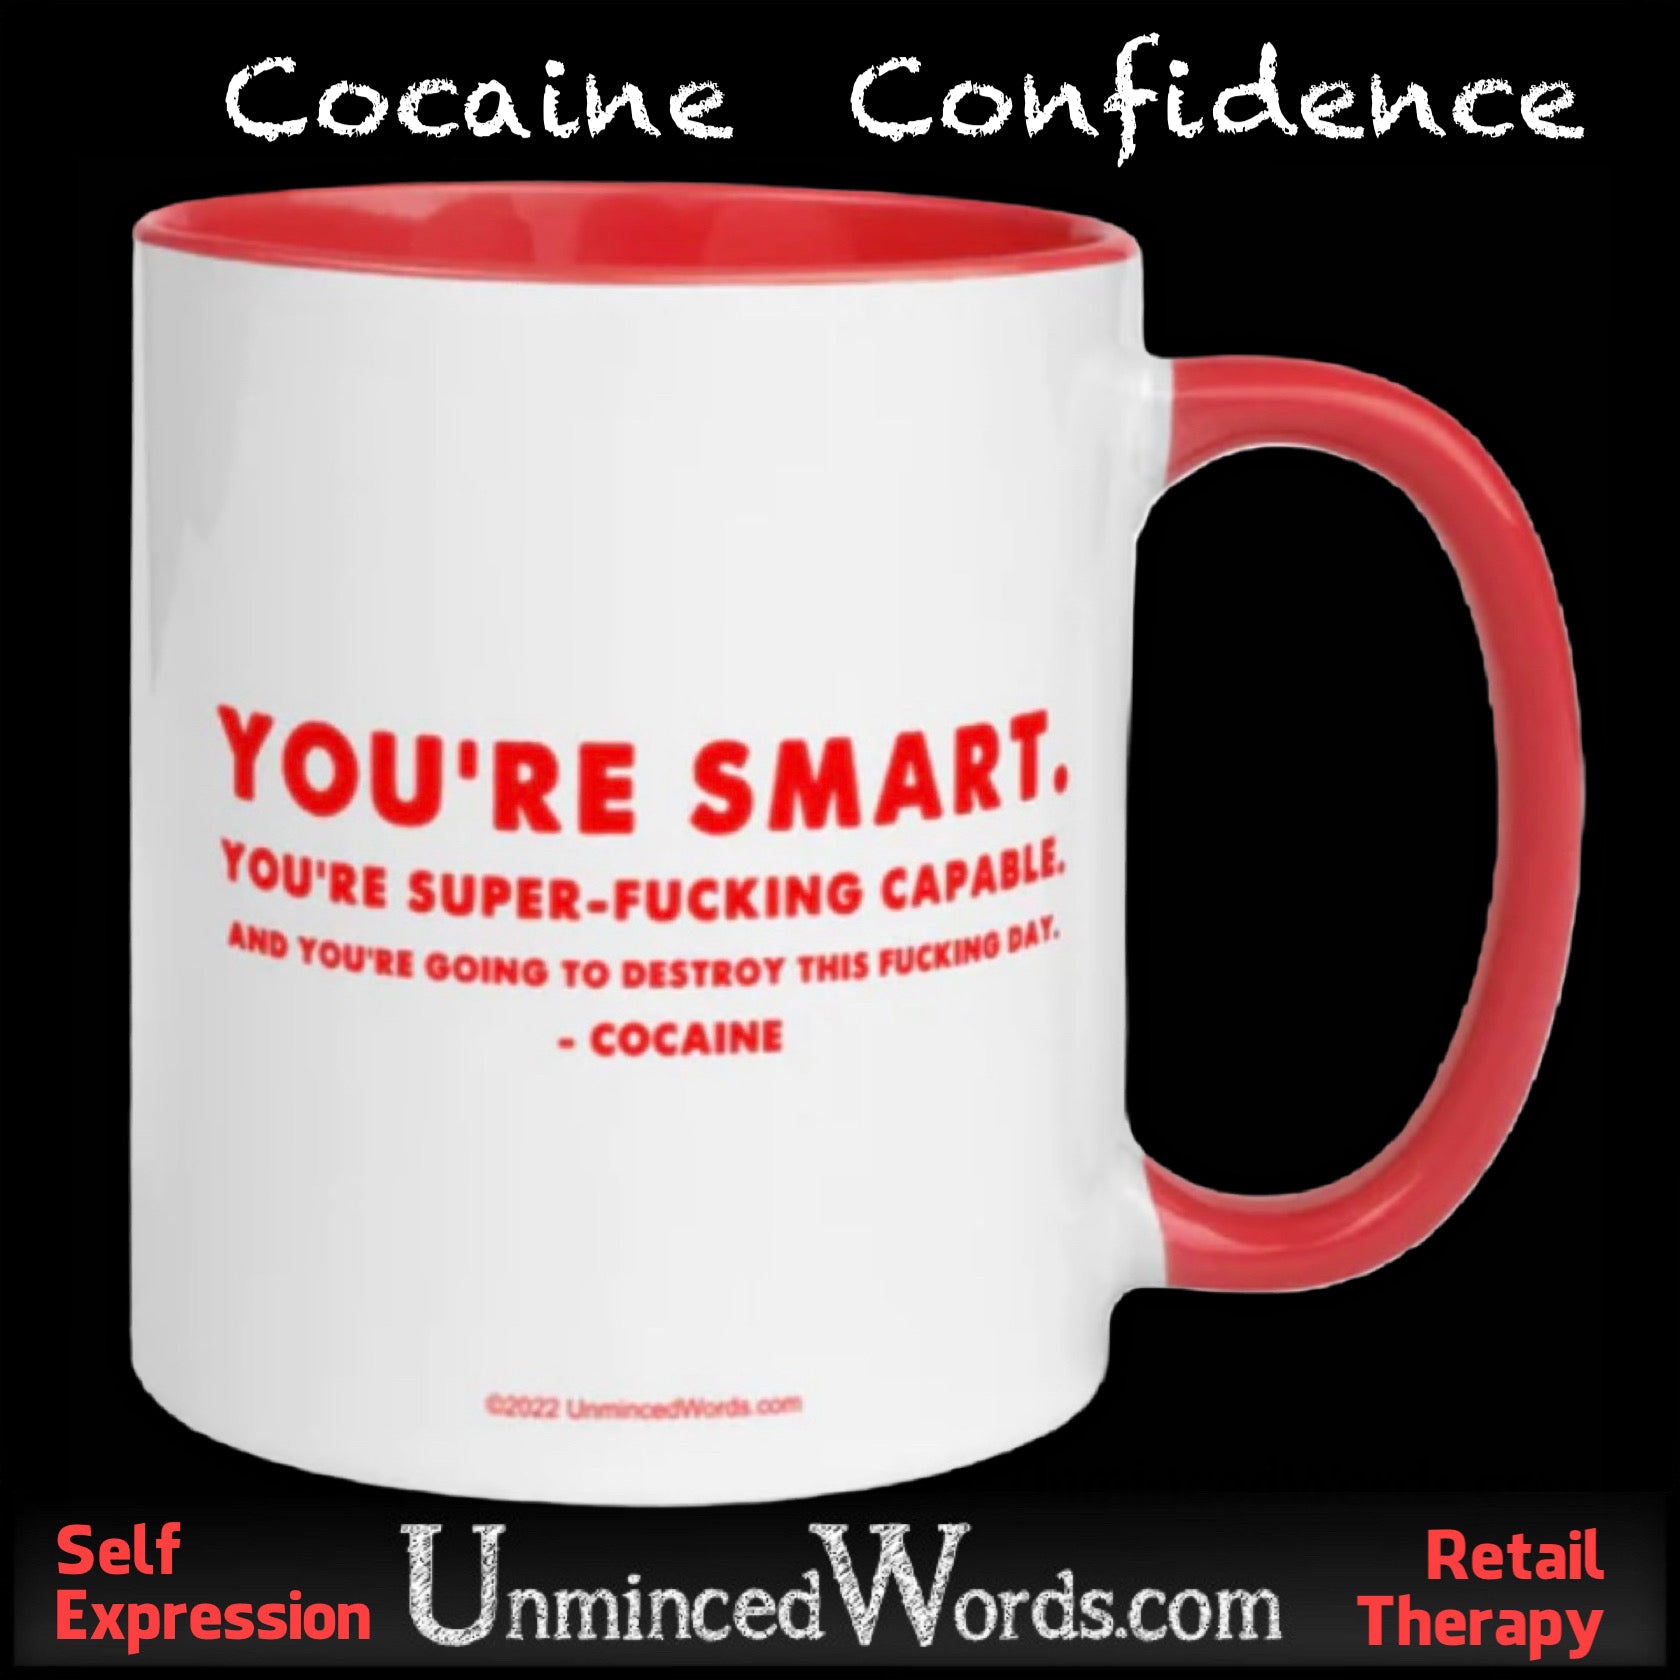 Cocaine Confidence!